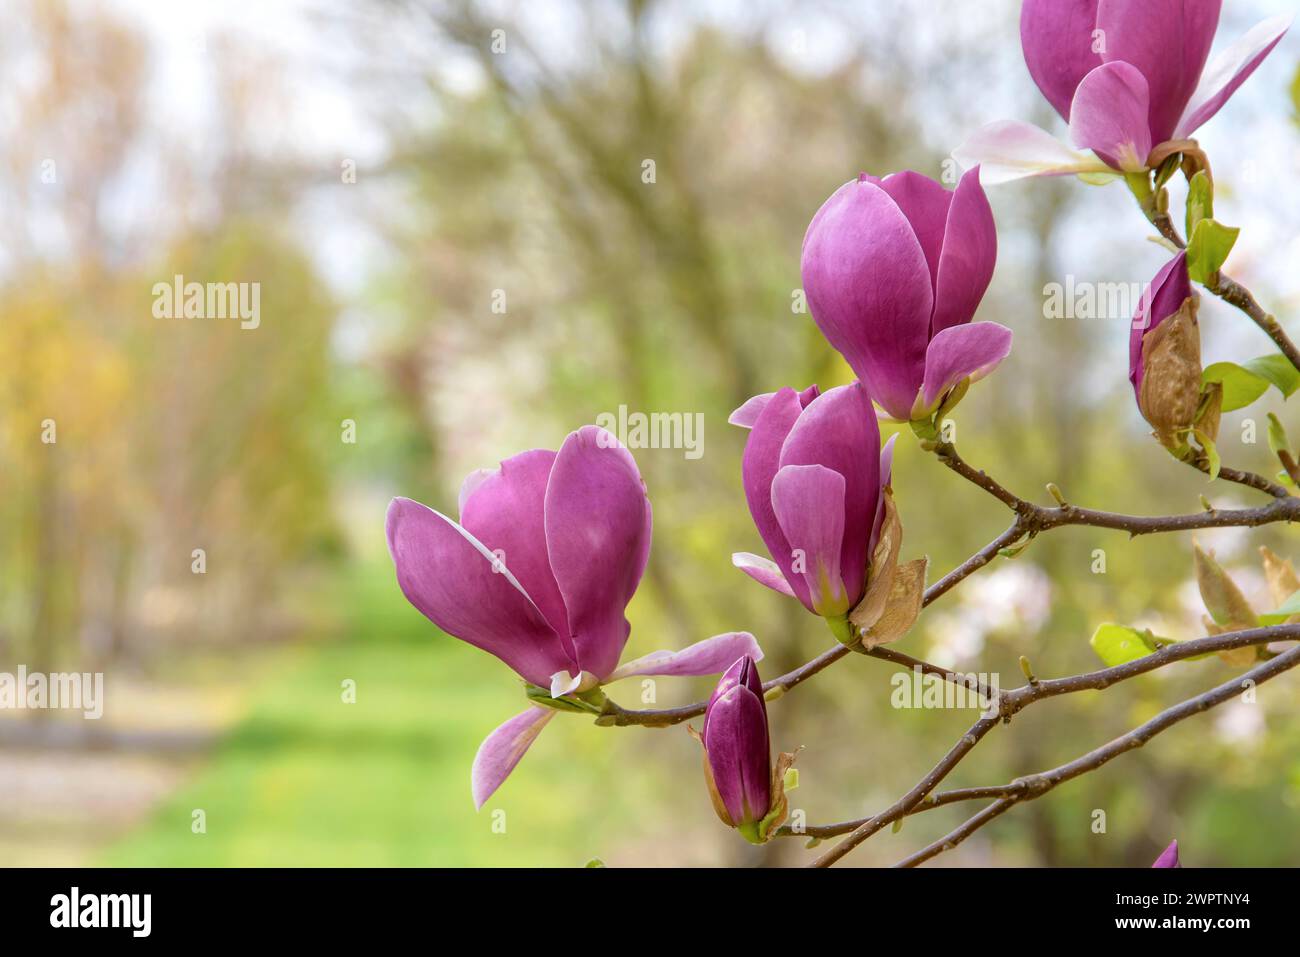 Tulpenmagnolie (Magnolia x soulangeana 'Lennei'), Sächsisches Landesamt für Umwelt, Landwirtschaft und Geologie, Pillnitz, Sachsen, Deutschland Stockfoto